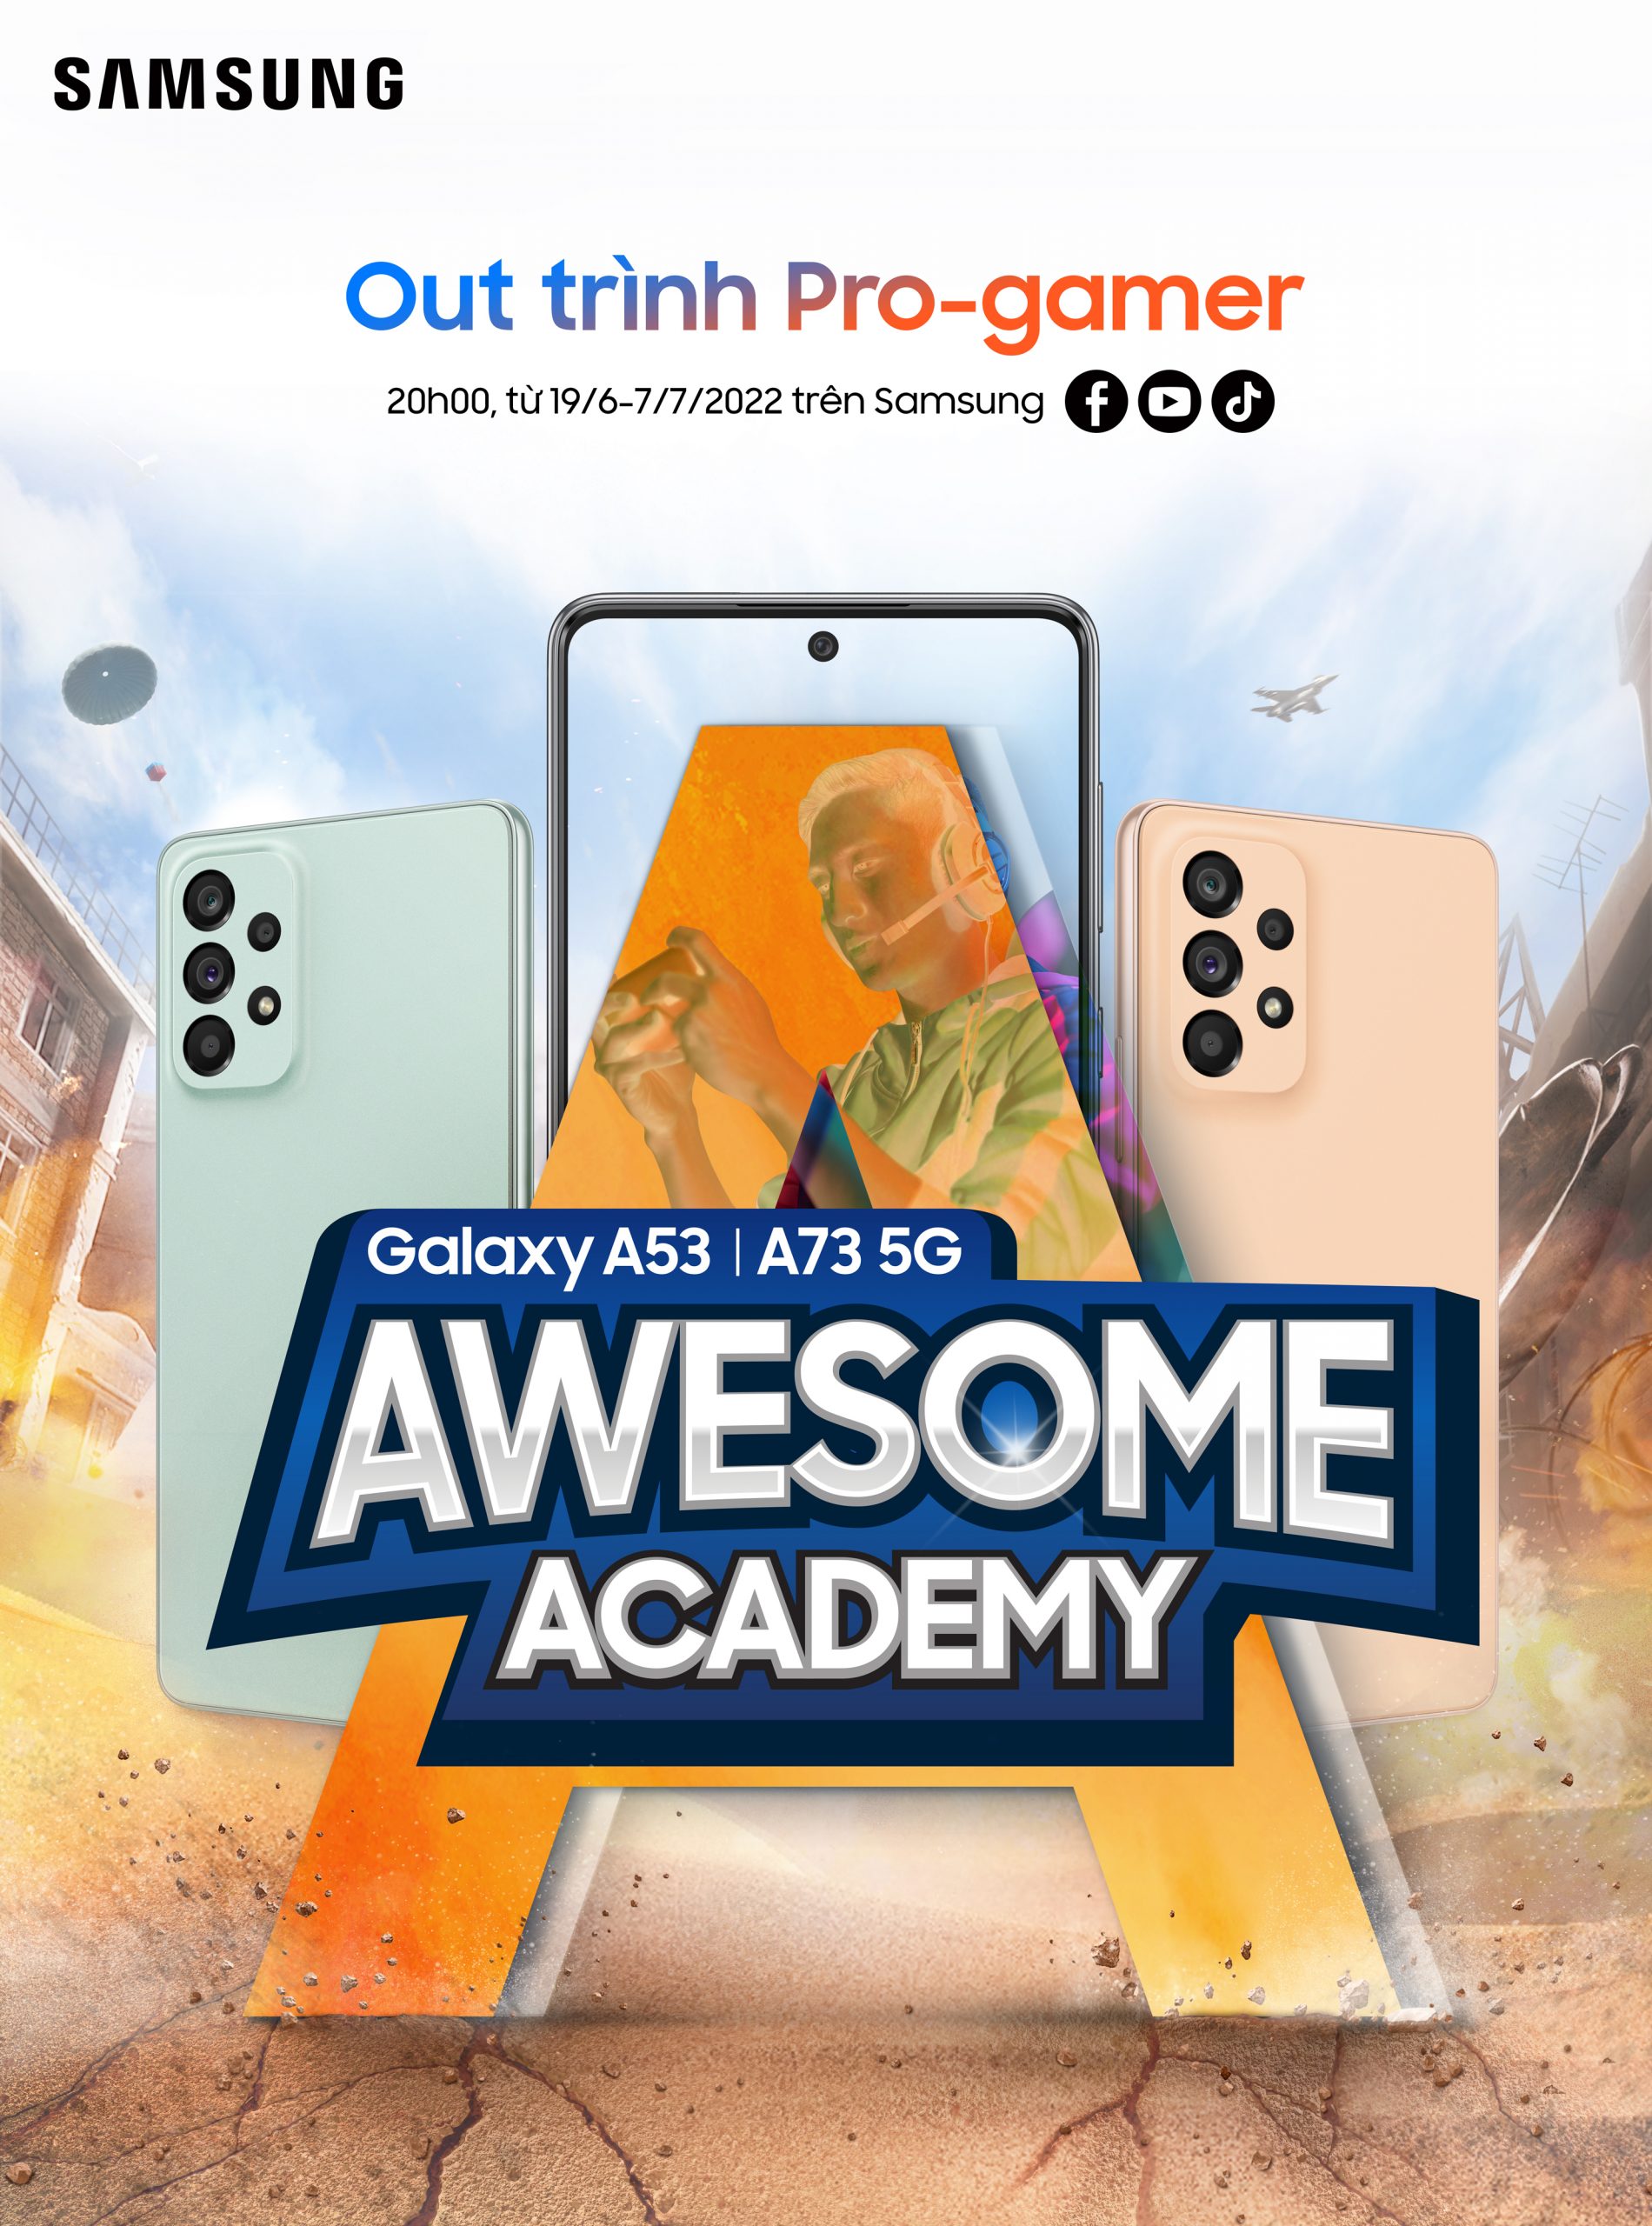 Trực tiếp Awesome Academy tập 3 của Samsung Galaxy A – Vua PUBG Mobile xuất hiện? Hãy cùng đón xem!